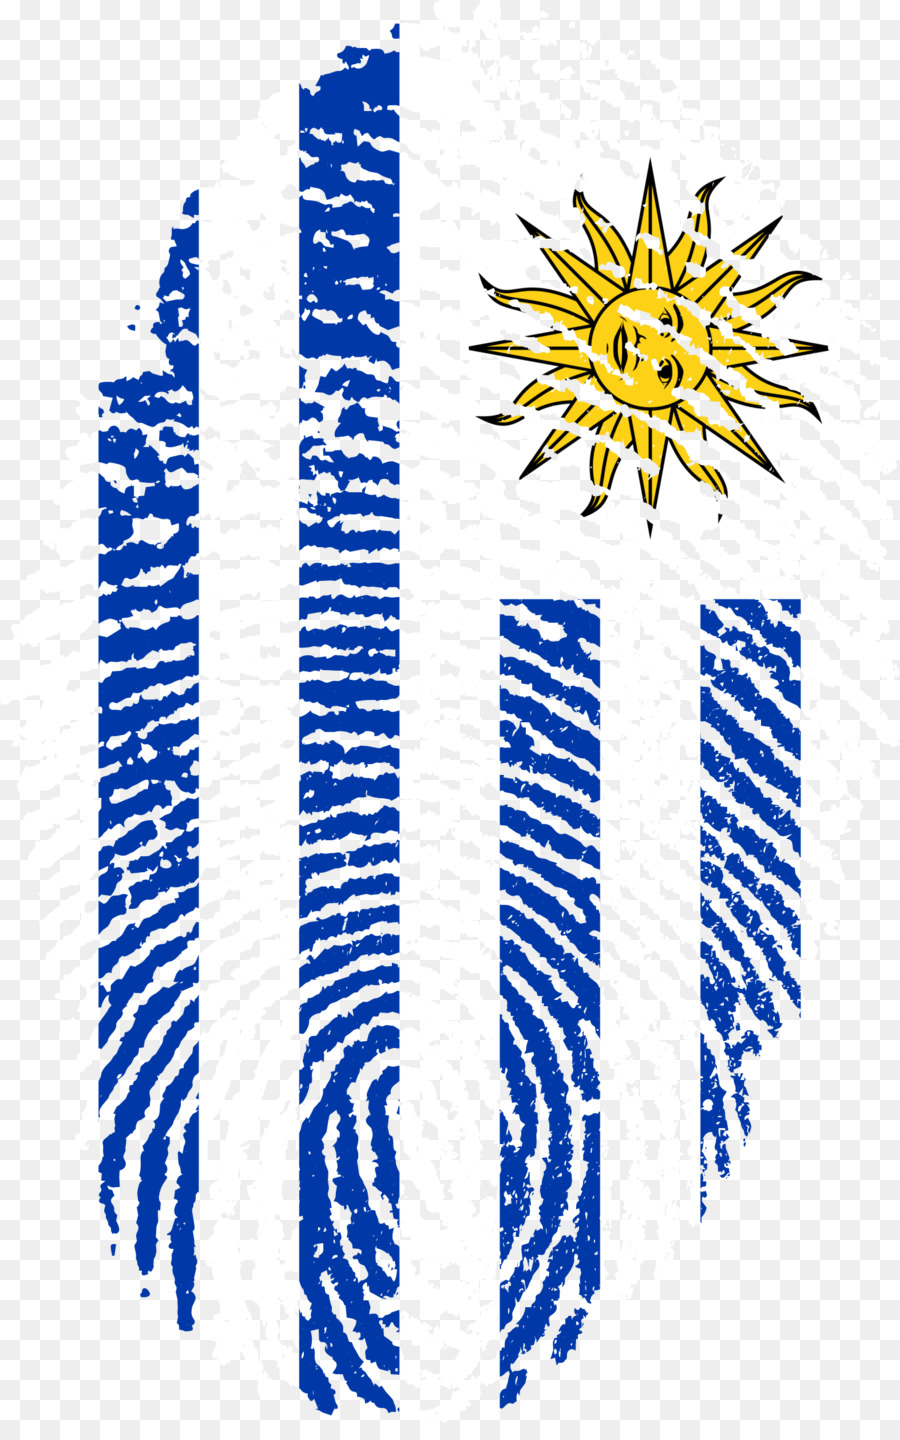 Bandiera dell'Uruguay Galleria di stato sovrano bandiere di Impronte digitali - dito di stampa